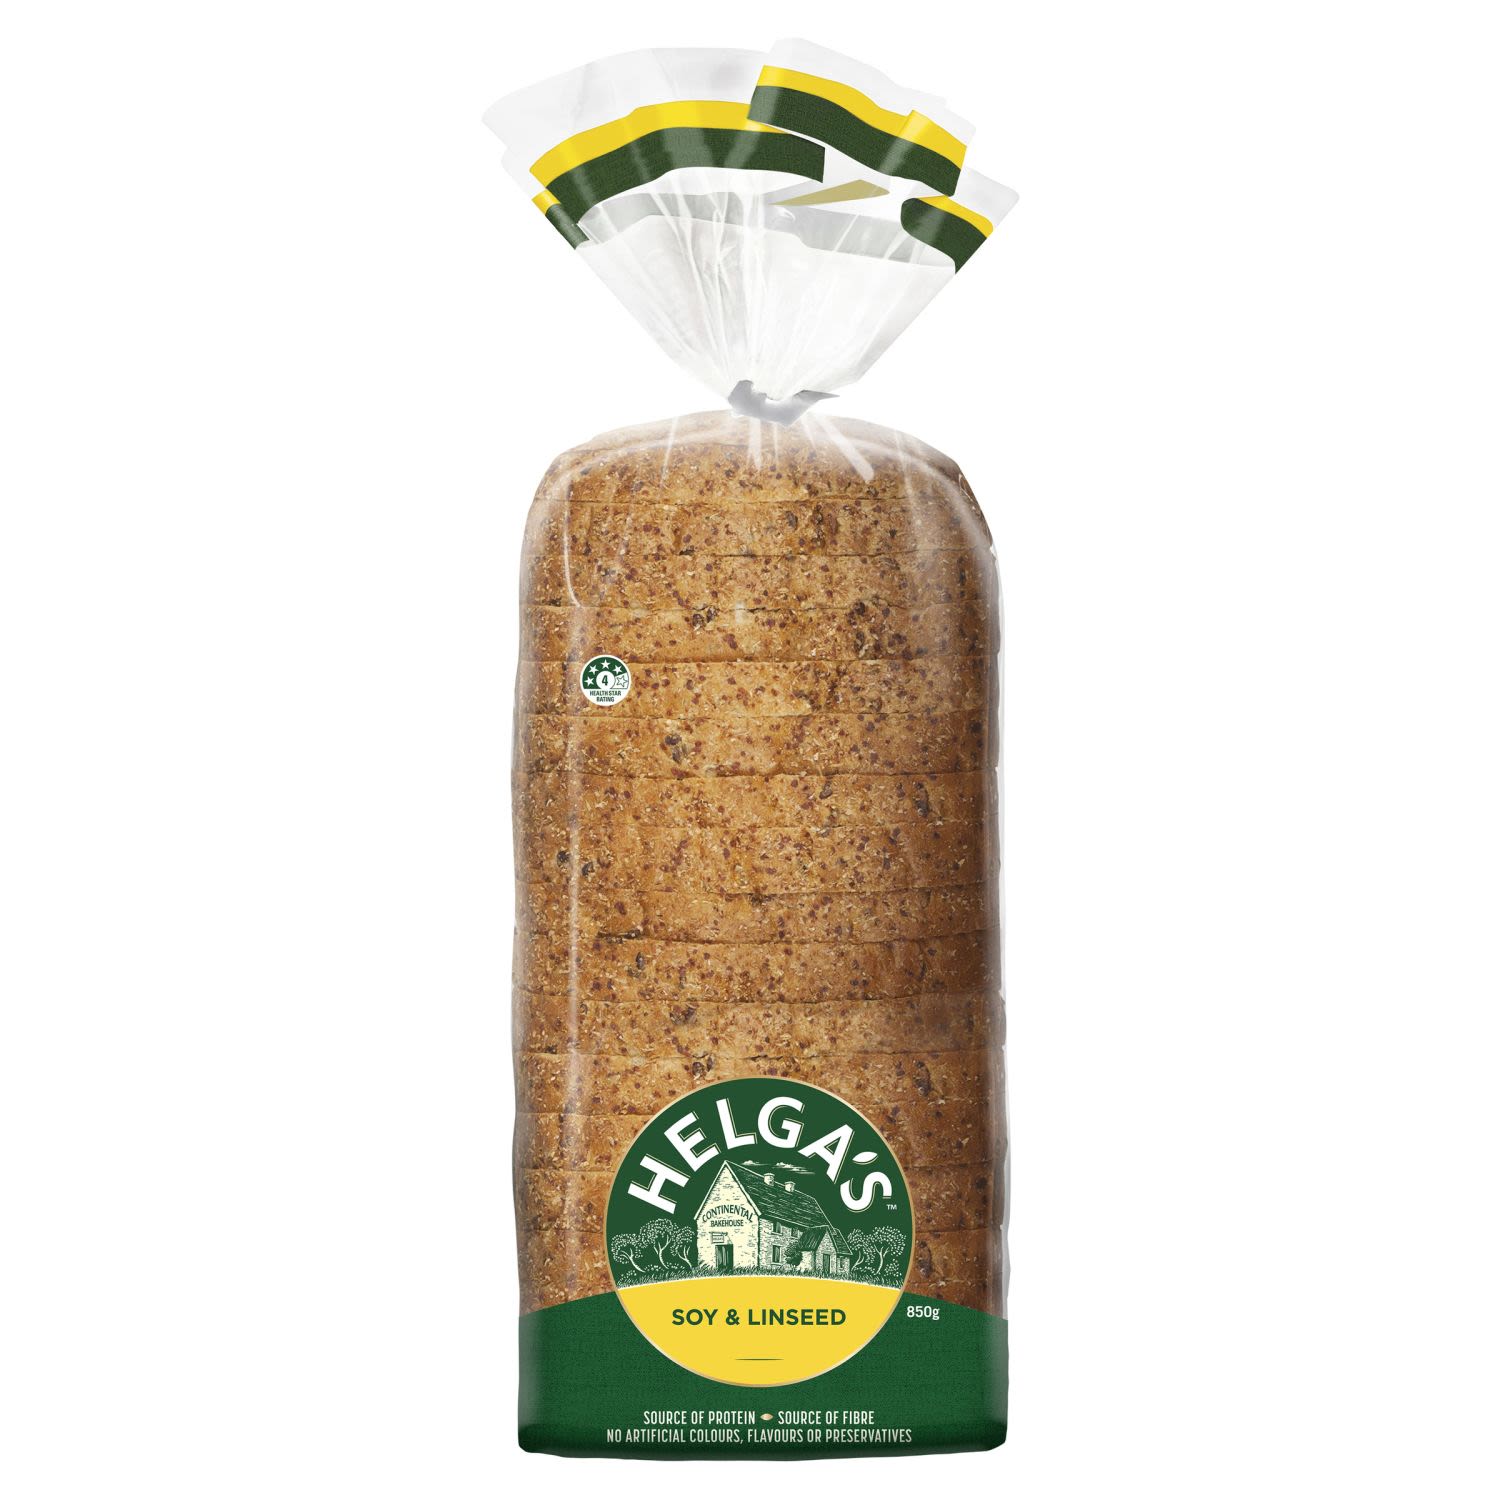 Helga's Soy & Linseed Loaf Sliced Bread, 850 Gram